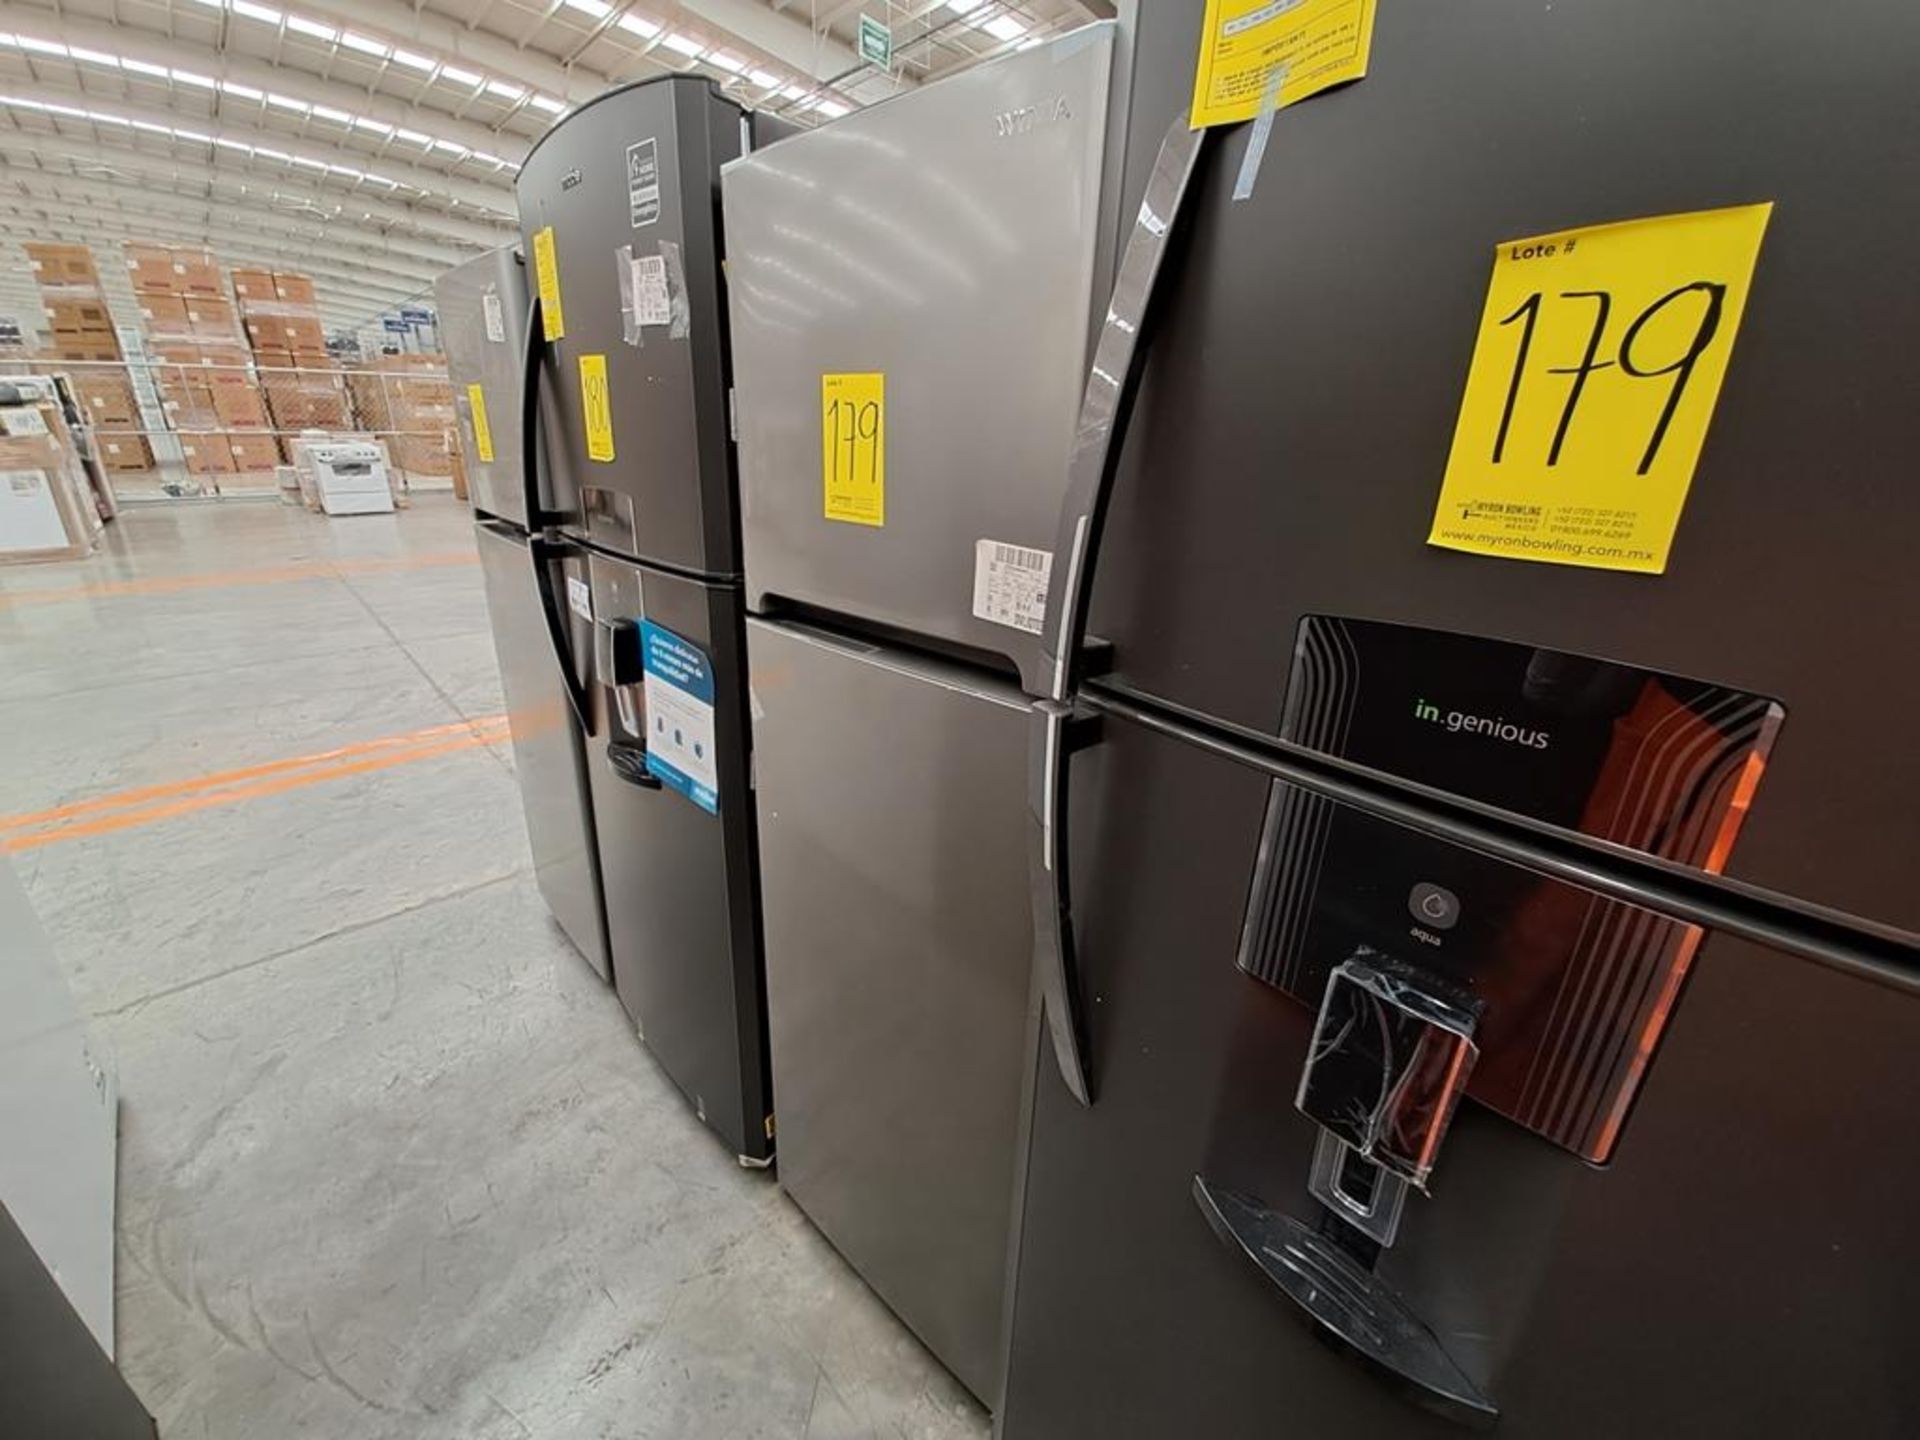 (Equipo nuevo) Lote de 2 refrigeradores contiene: 1 refrigerador con dispensador de agua Marca MABE - Image 4 of 10